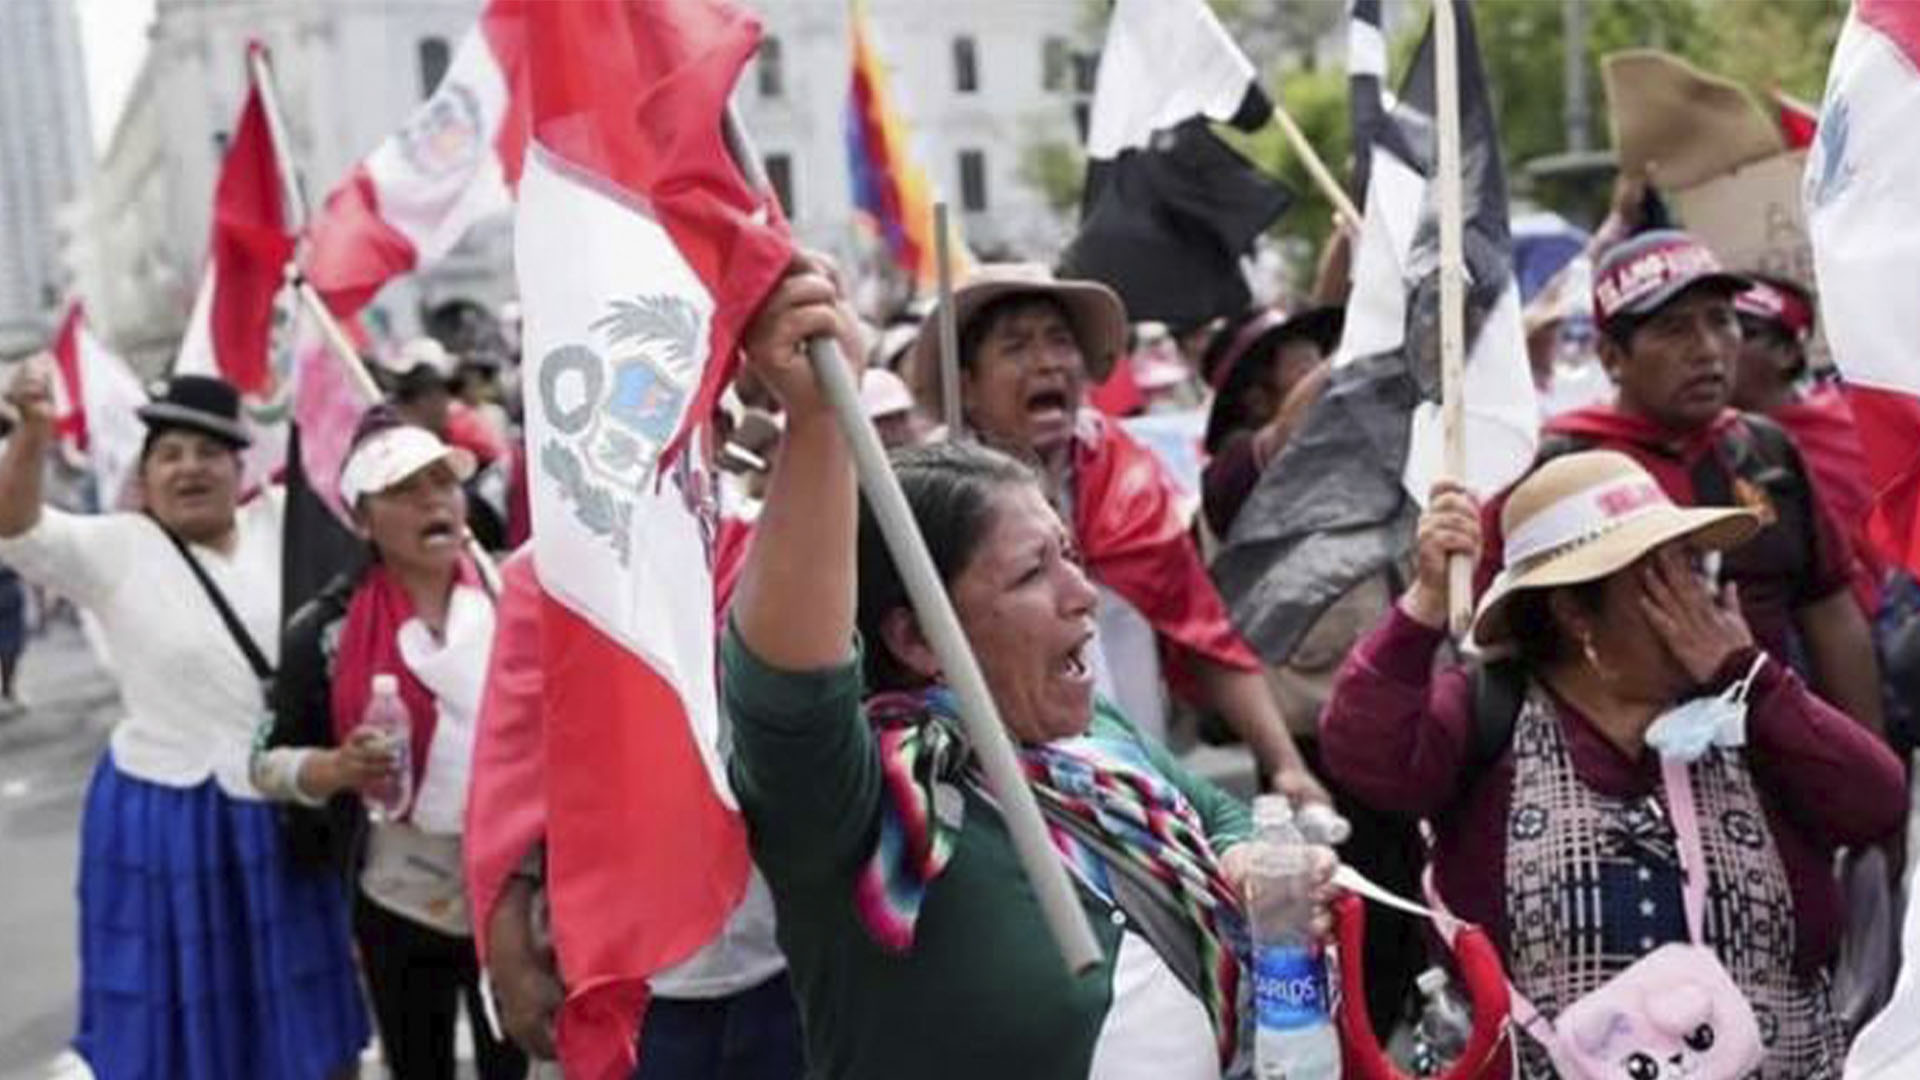 Protesta en Lima